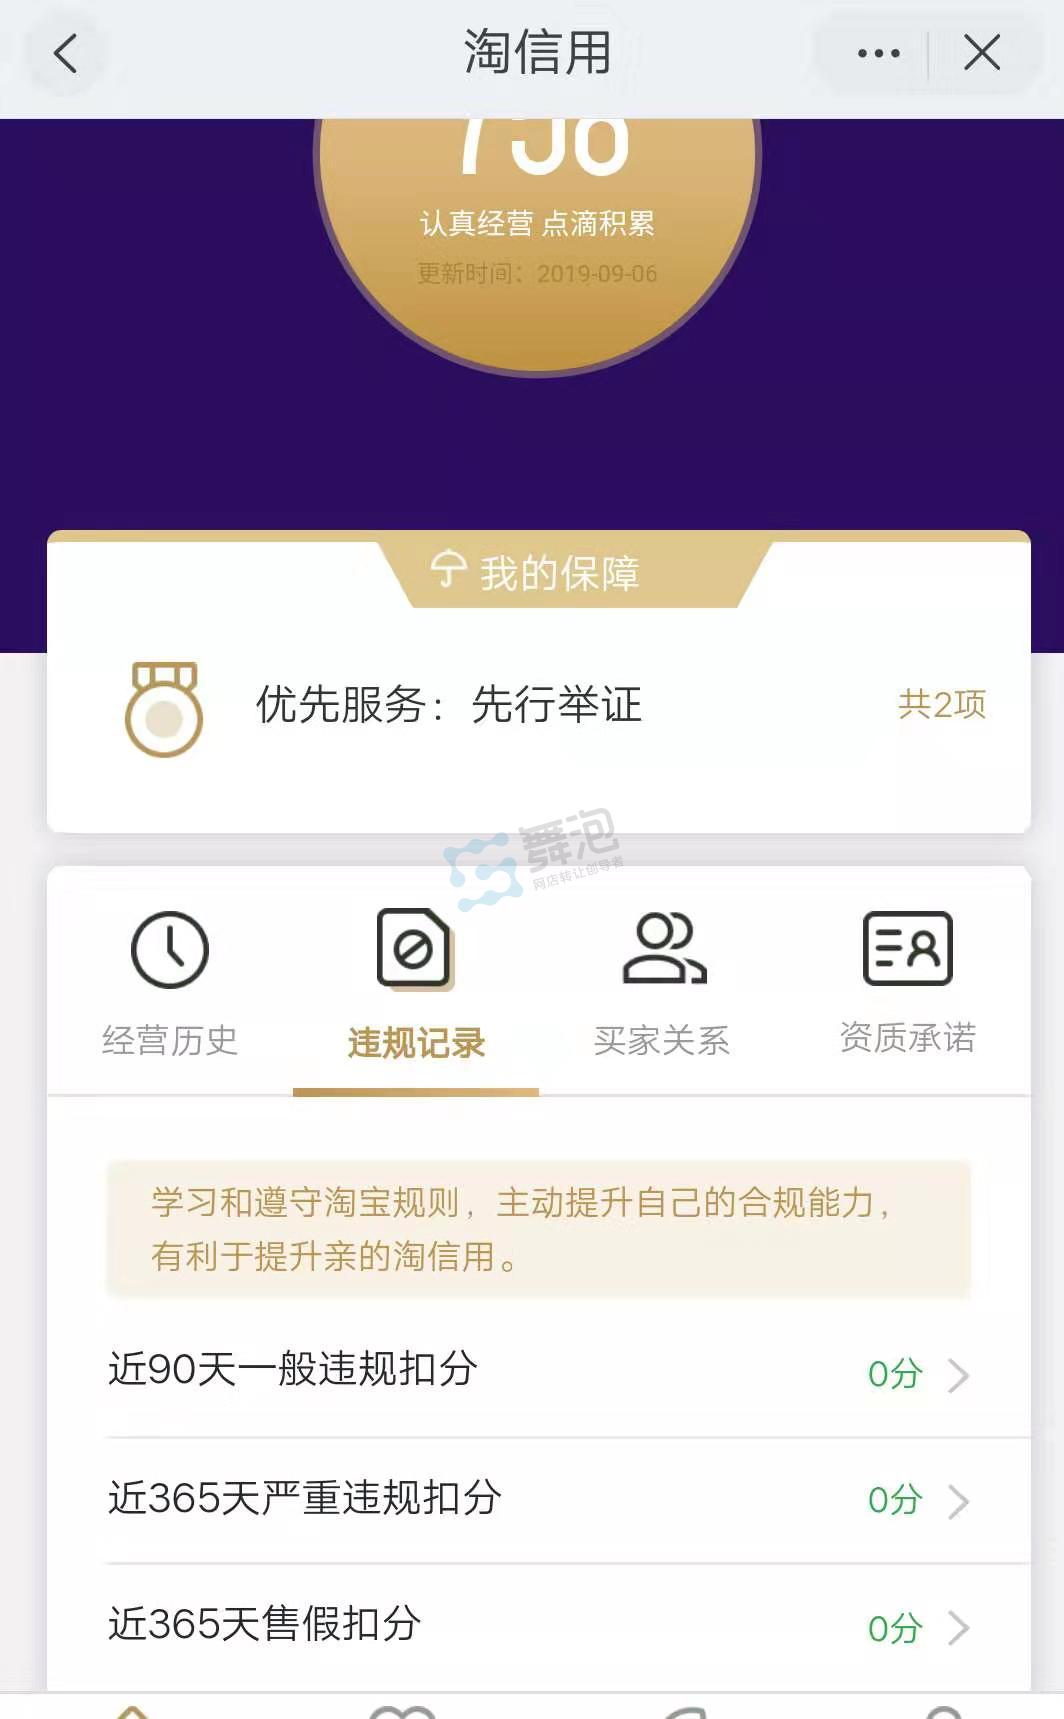 北京市丰台区颁发了中国第一张个人电子商务到实体经营许可证